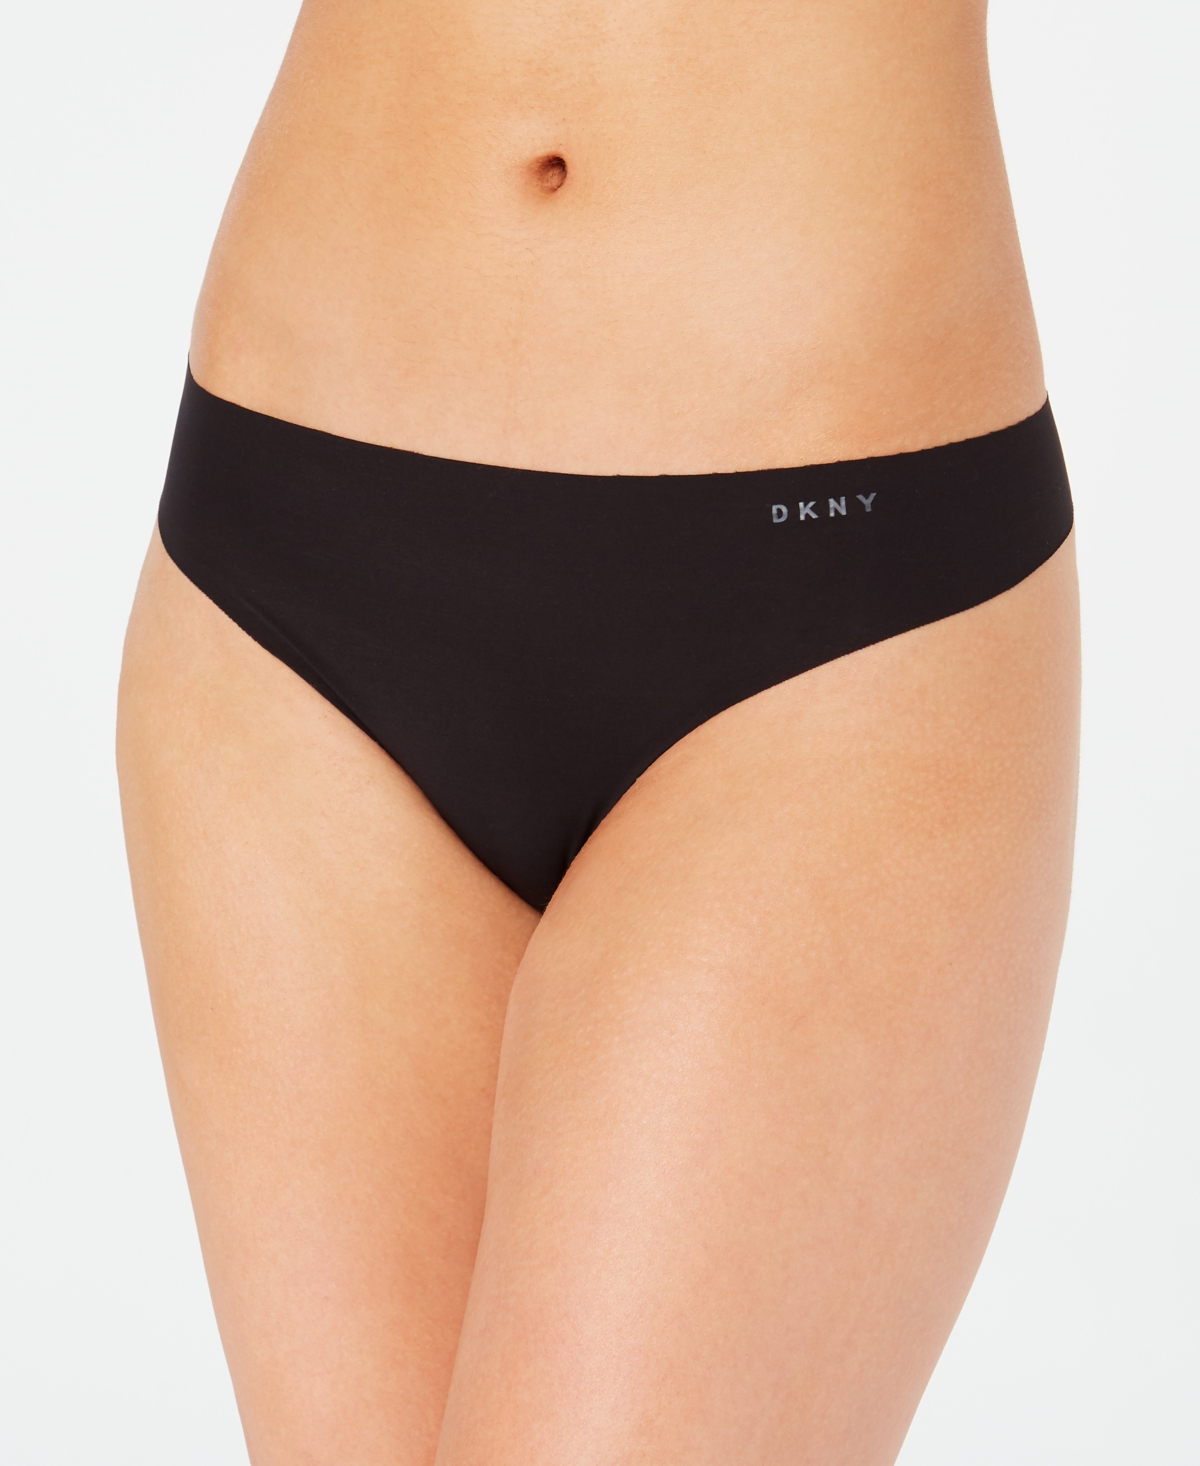 Dkny Litewear Cut Anywear Logo Thong Underwear Dk5026 In Black,graphite